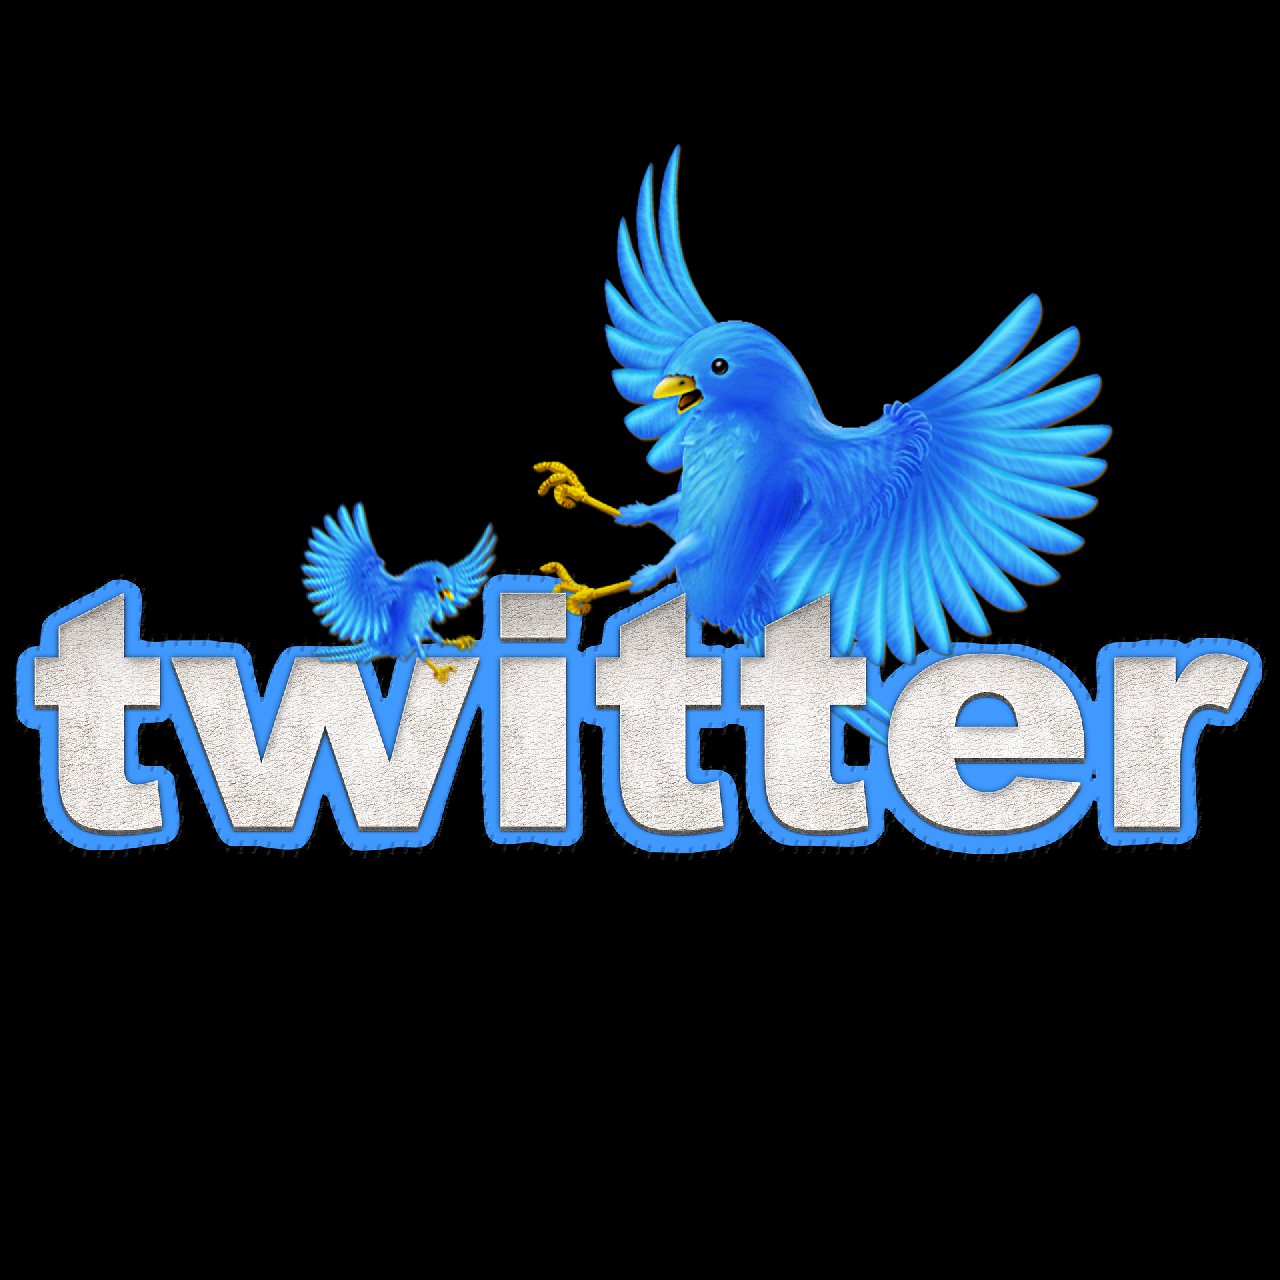 Twitter gerçek dışı paylaşımlarla mücadeleye başlıyor: Birdwatch